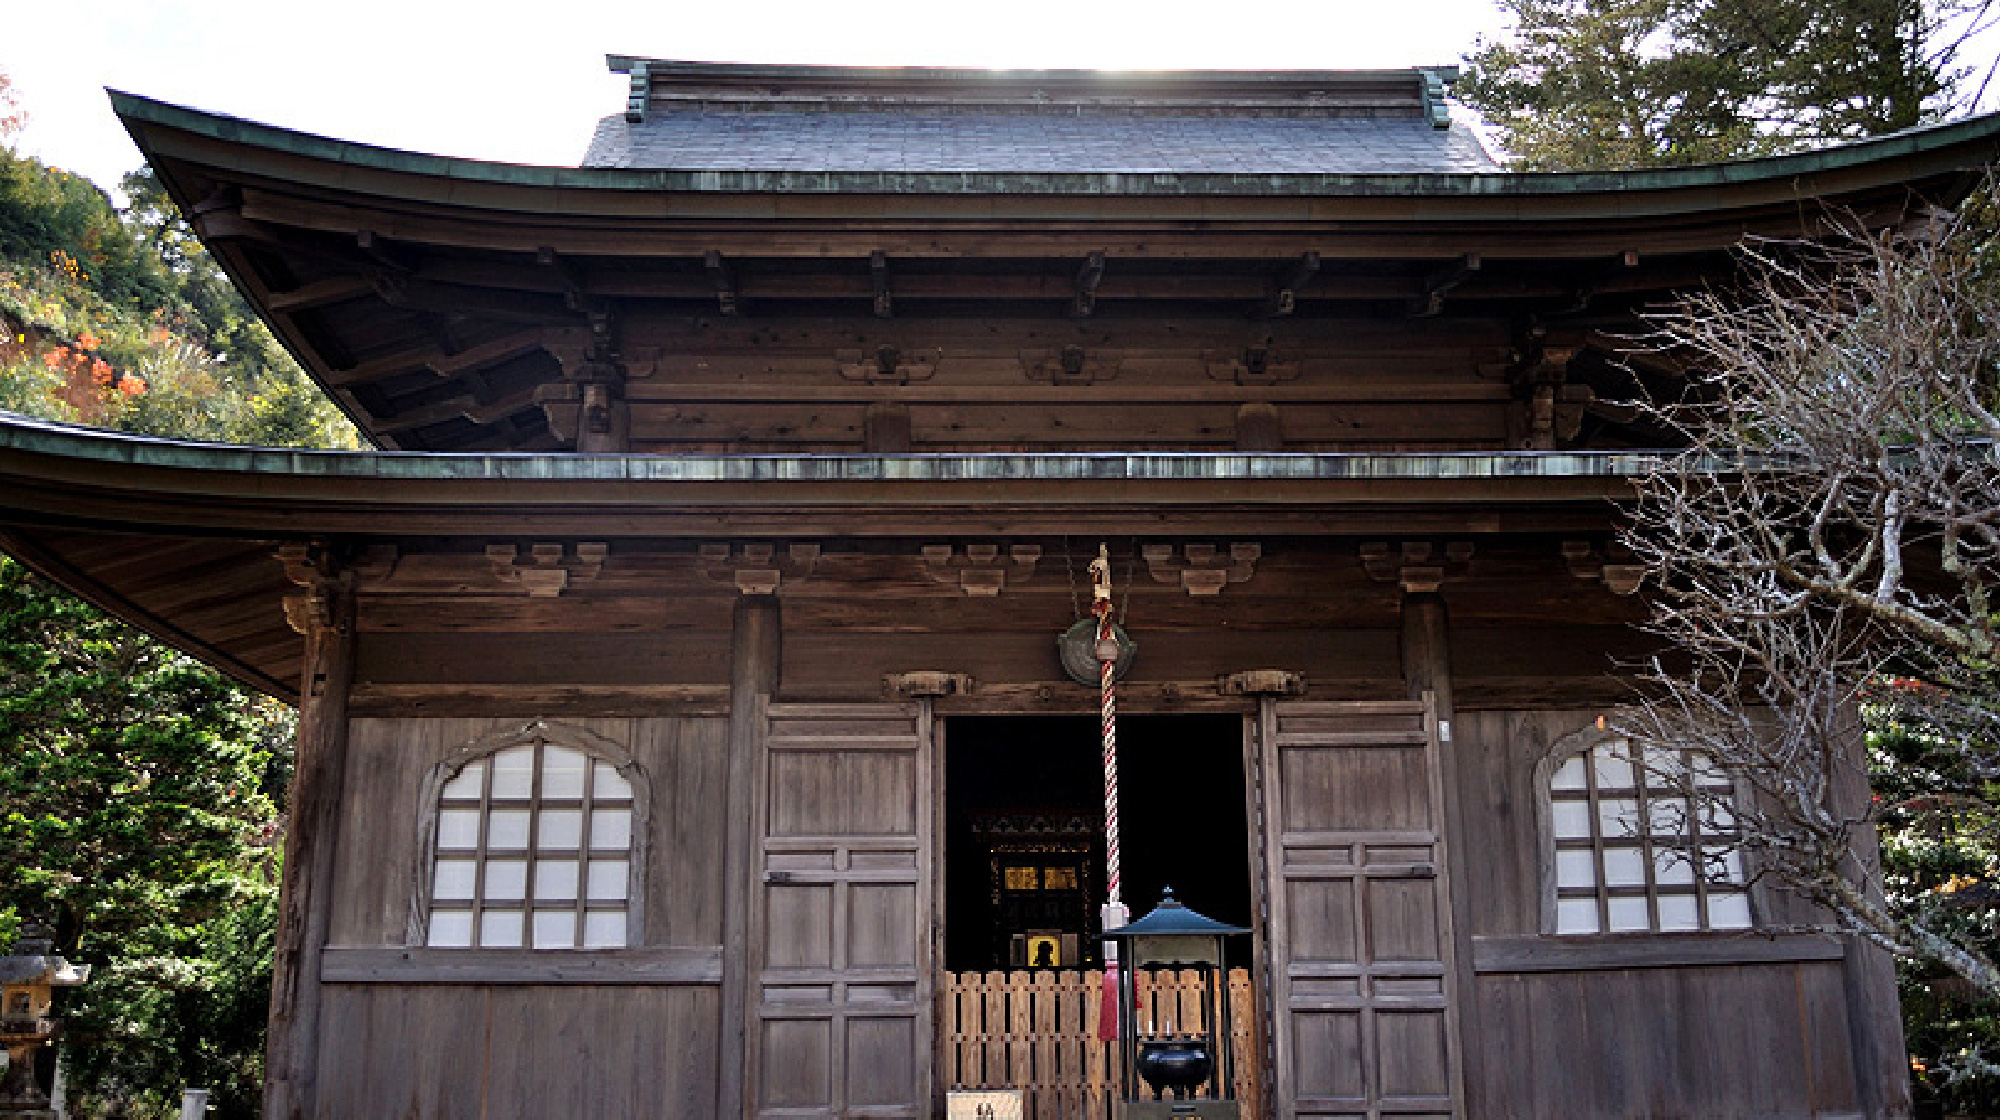 Toshunji Temple